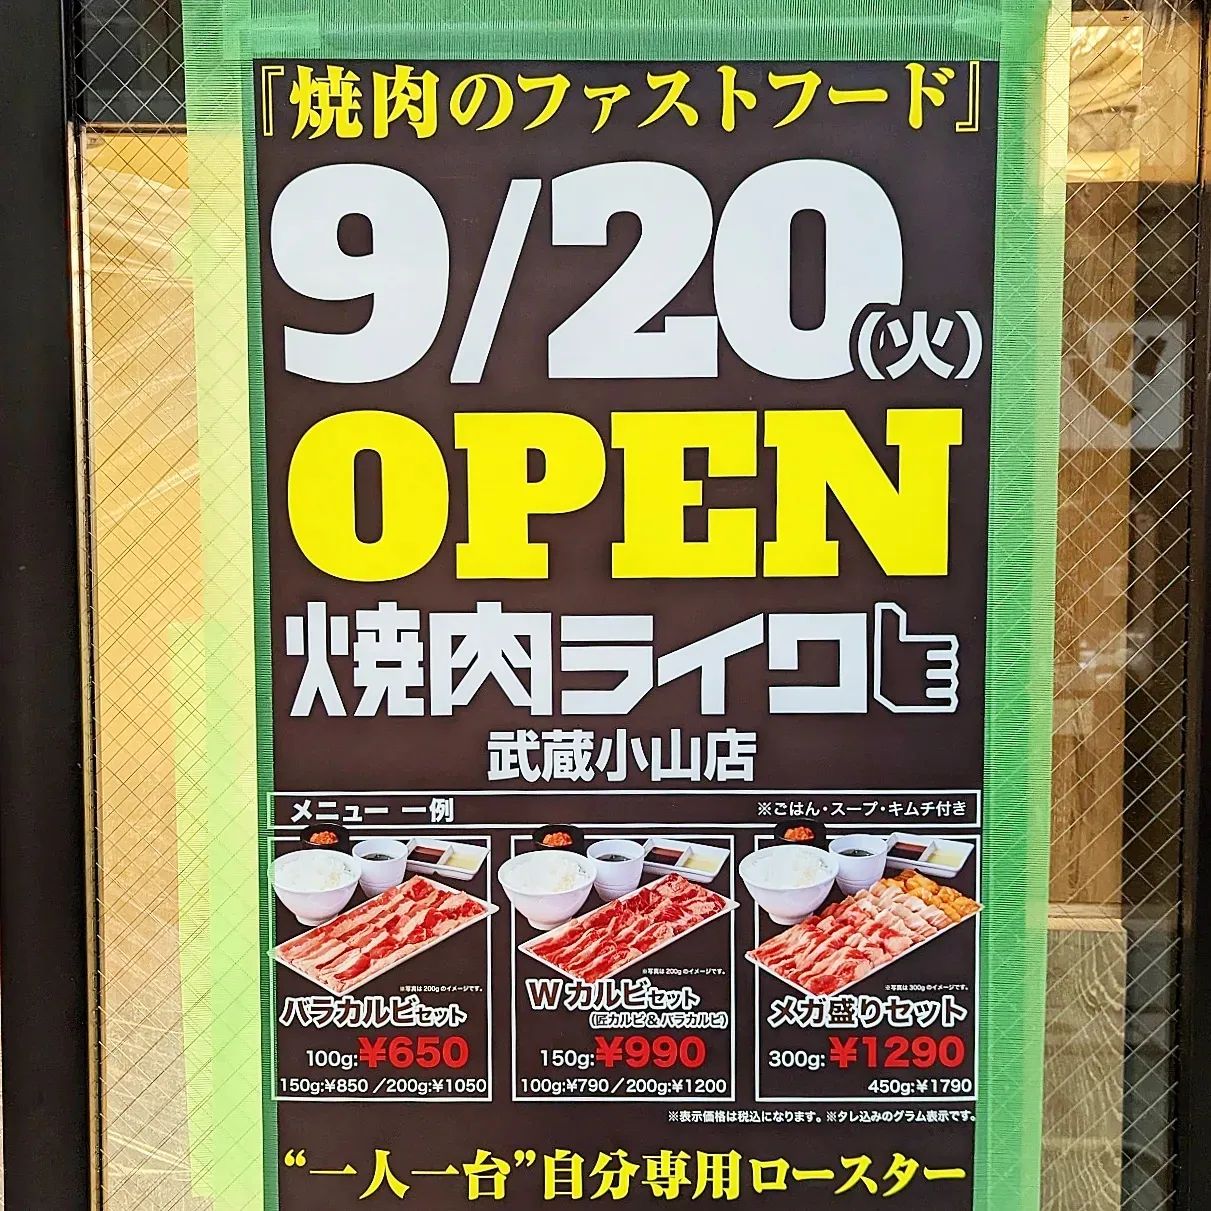 #武蔵小山新店情報「 #焼肉ライク 」2022年9月20日オープン予定！武蔵小山で一発目の一人焼肉はメガ盛りセットの450gで盛大に祝いたいところでございますね！今月末は肉祭り決定でございますな！場所は、武蔵小山駅からパルム商店街を西小山方面へ進み、26号線の信号手前の右手側にございます。以前、から好しがあった場所でございますね。【侍猫の育て方】メインサイトも見ていただくと、侍猫が元気になって武蔵小山をもっと食べ歩きます！※メインサイトへの移動はプロフィールのURLが簡単！→ @musashikoyama.news → https://musashikoyama.samuraicat.jp/広告の詳細も見ていただいたムサコマニアの皆様ありがとうございます！【侍猫のご飯のあげ方】武蔵小山駅周辺のグルメ情報をお気軽にご連絡ください。気まぐれにUPします！#武蔵小山 #武蔵小山情報 #武蔵小山ランチ #武蔵小山商店街  #武蔵小山グルメ #武蔵小山カフェ #西小山 #戸越銀座 #不動前 #碑文谷 #戸越 #中延  #荏原中延 #目黒本町 #品川 #品川区 #品川グルメ #目黒 #目黒区 #目黒グルメ #東京 #東京グルメ #東京ランチ #新店 #新店オープン #武蔵小山新店 #武蔵小山オープン